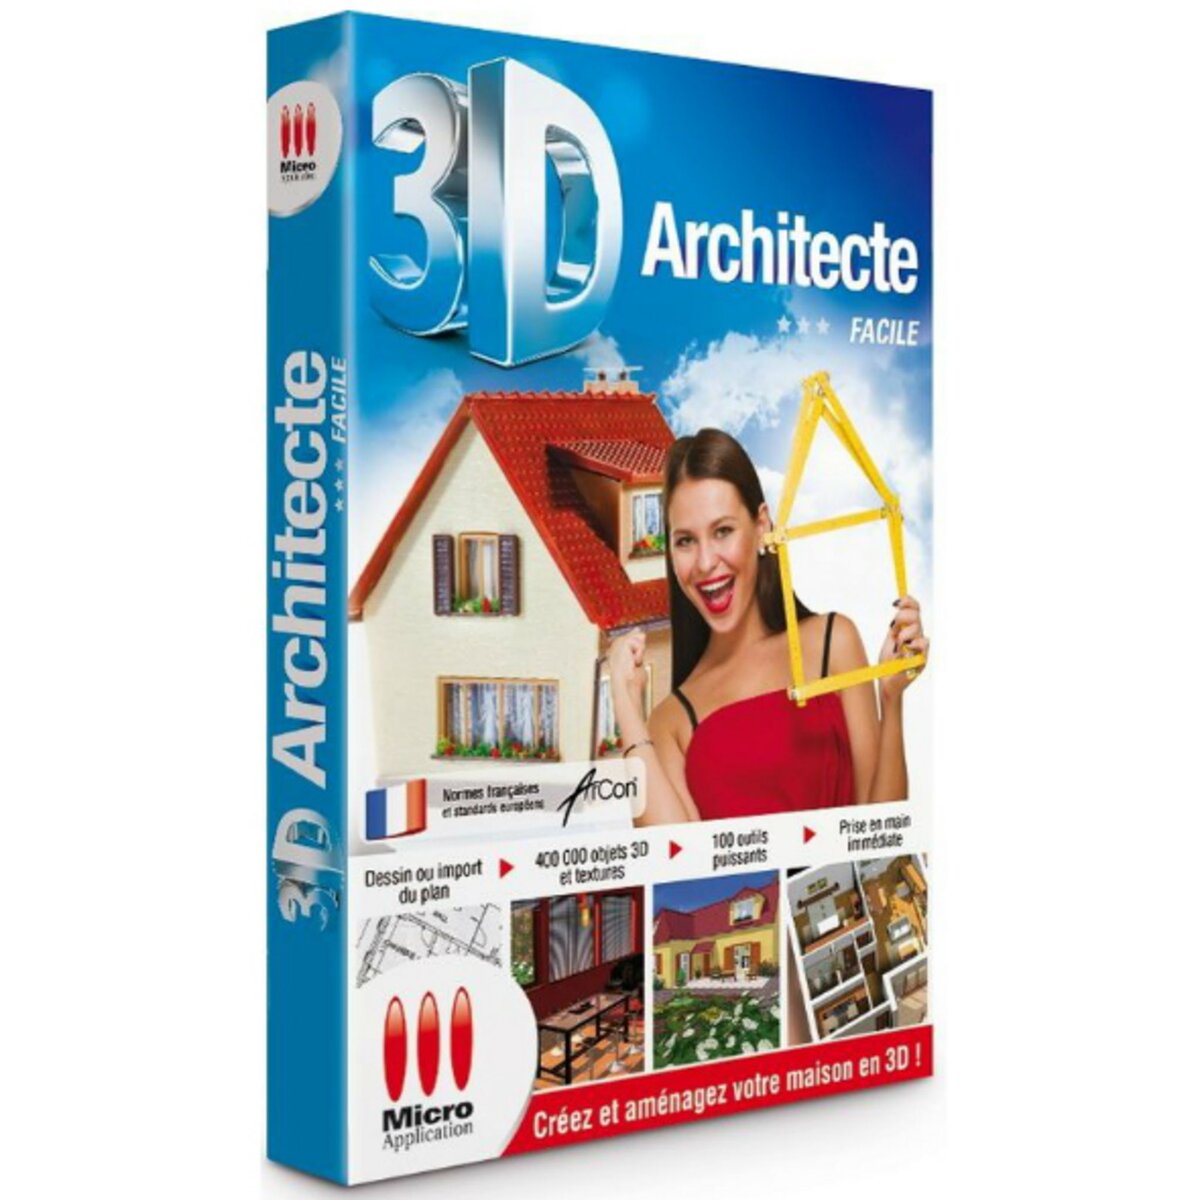 3D Architecte Facile - PC